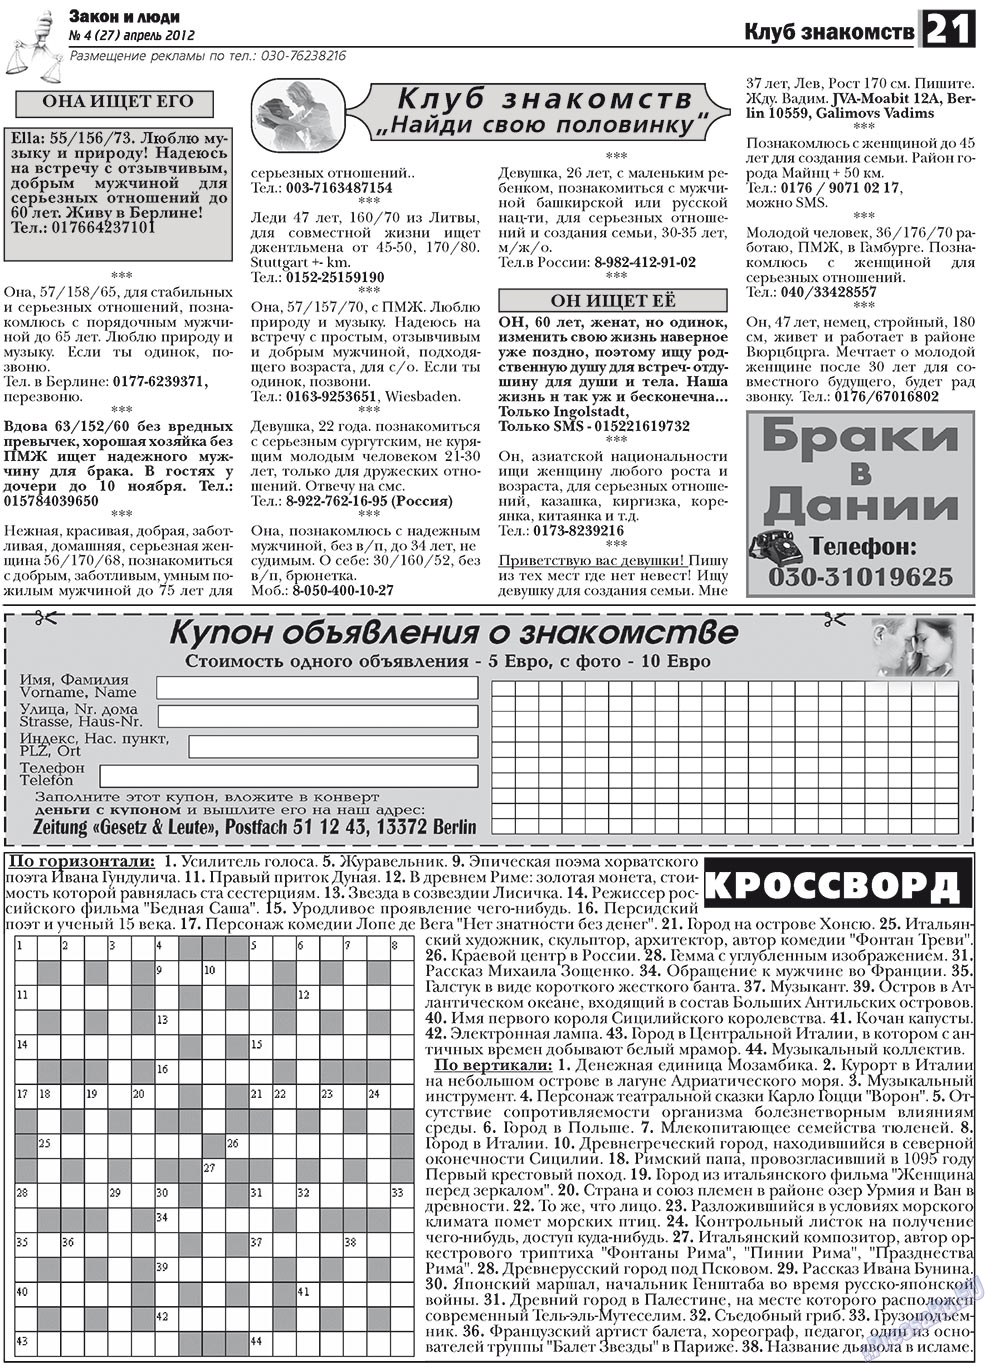 Закон и люди, газета. 2012 №4 стр.21